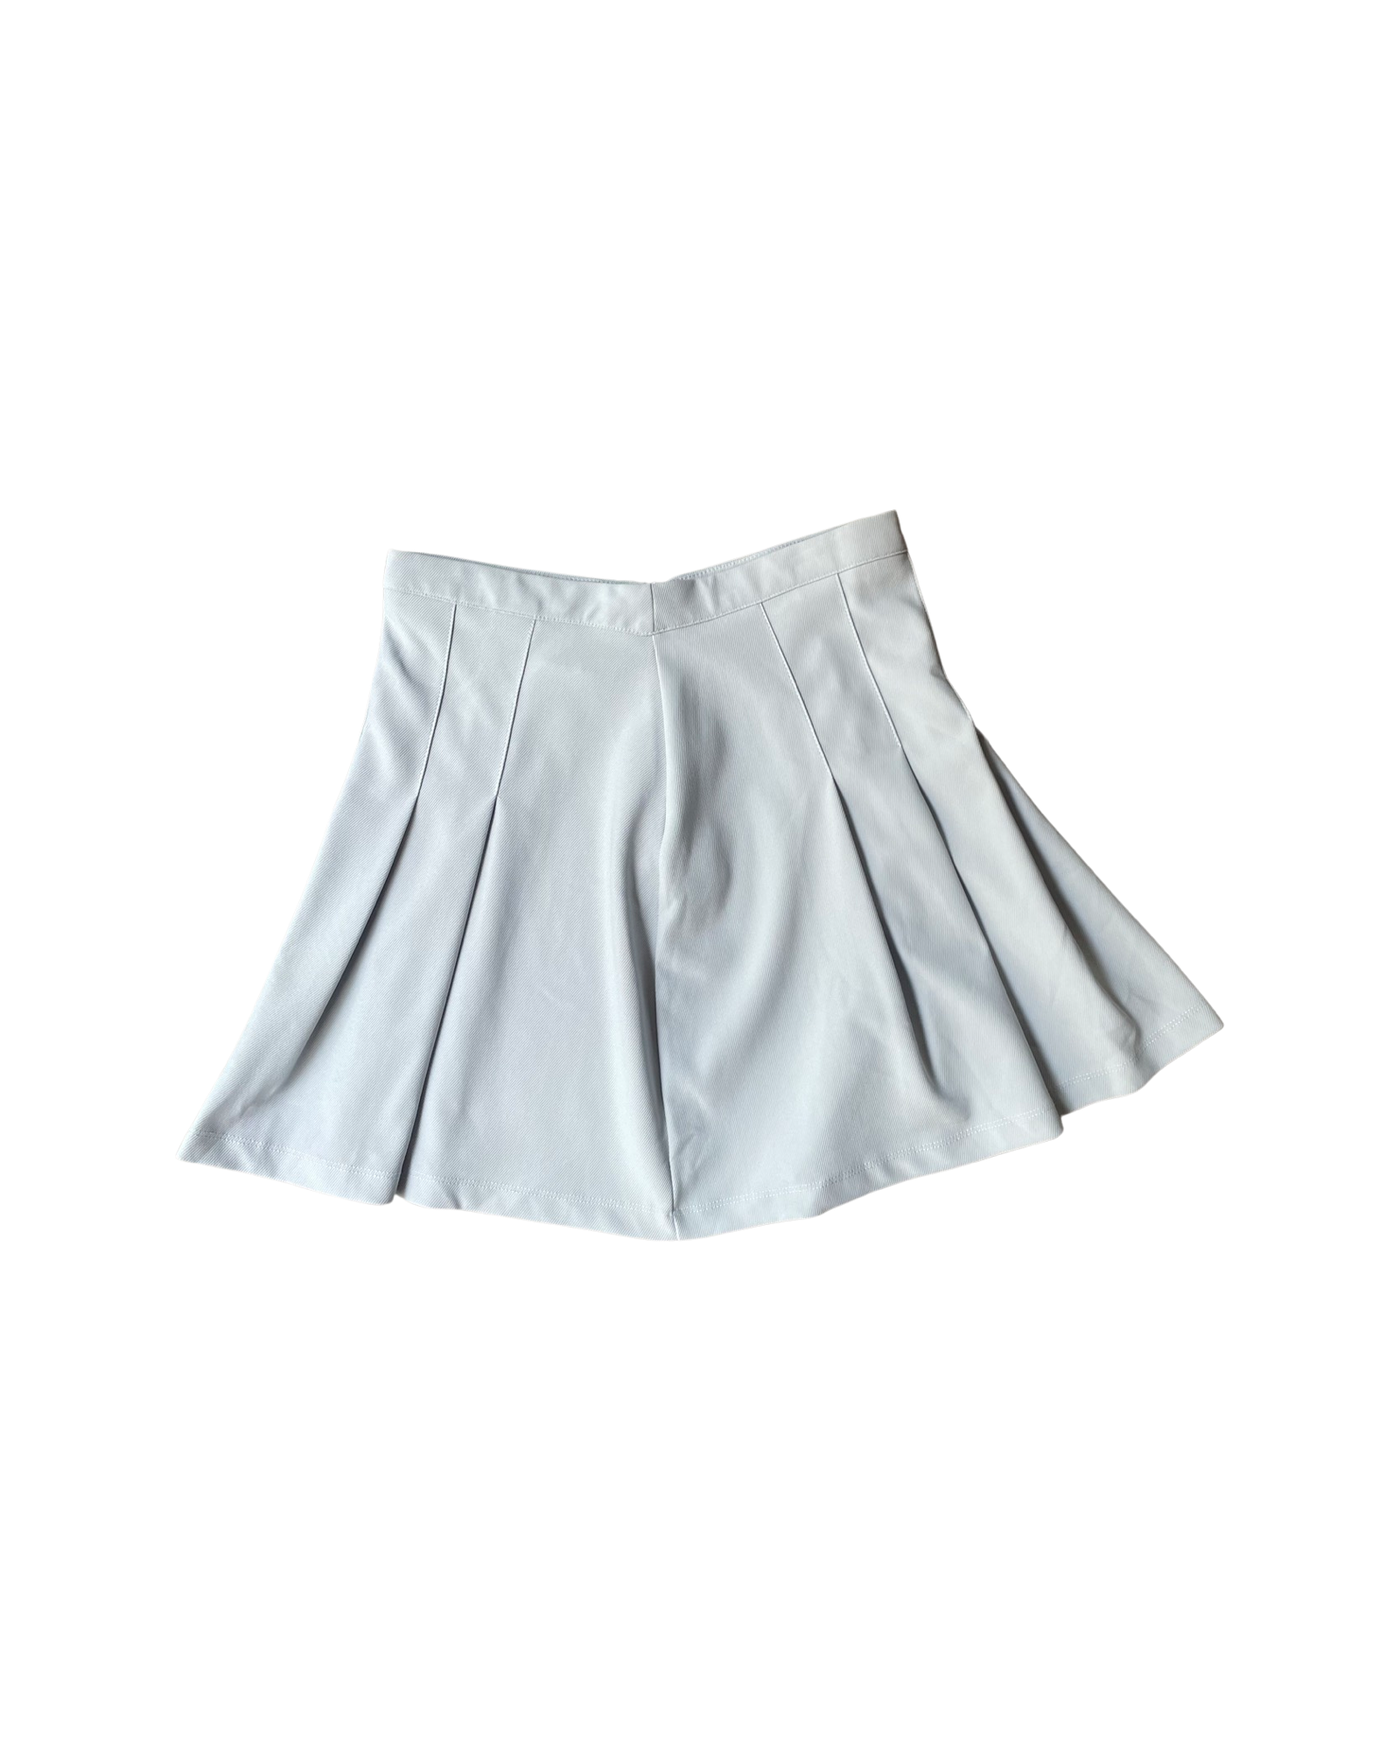 Vintage Mini Skirt